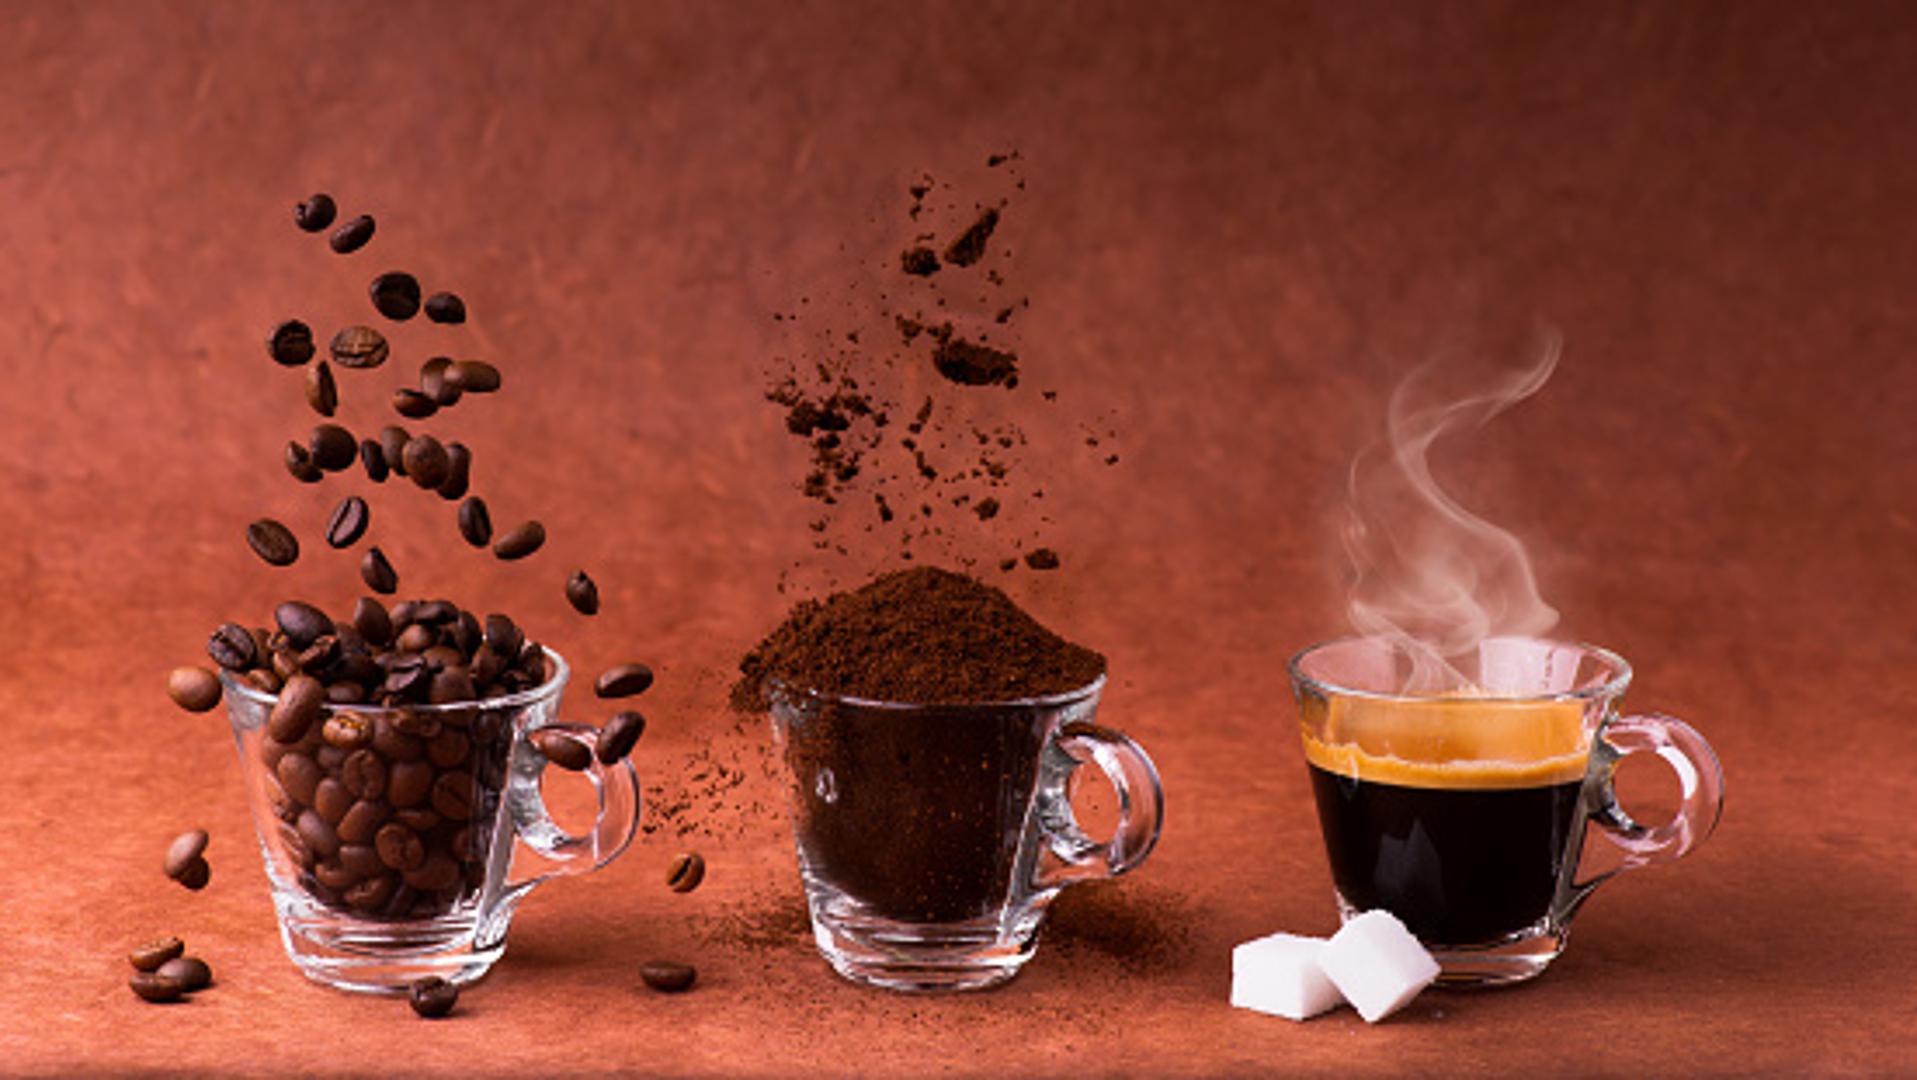 Kava je među najčešće konzumiranim pićima u cijelom svijetu. I mnogi će kod kuće baciti talog nakon ispijanja kave, no kad ovo pročitate, vjerojatno to više nećete činiti. Ovo su načini kako upotrijebiti talog od kave, i svaki će vam se svidjeti...